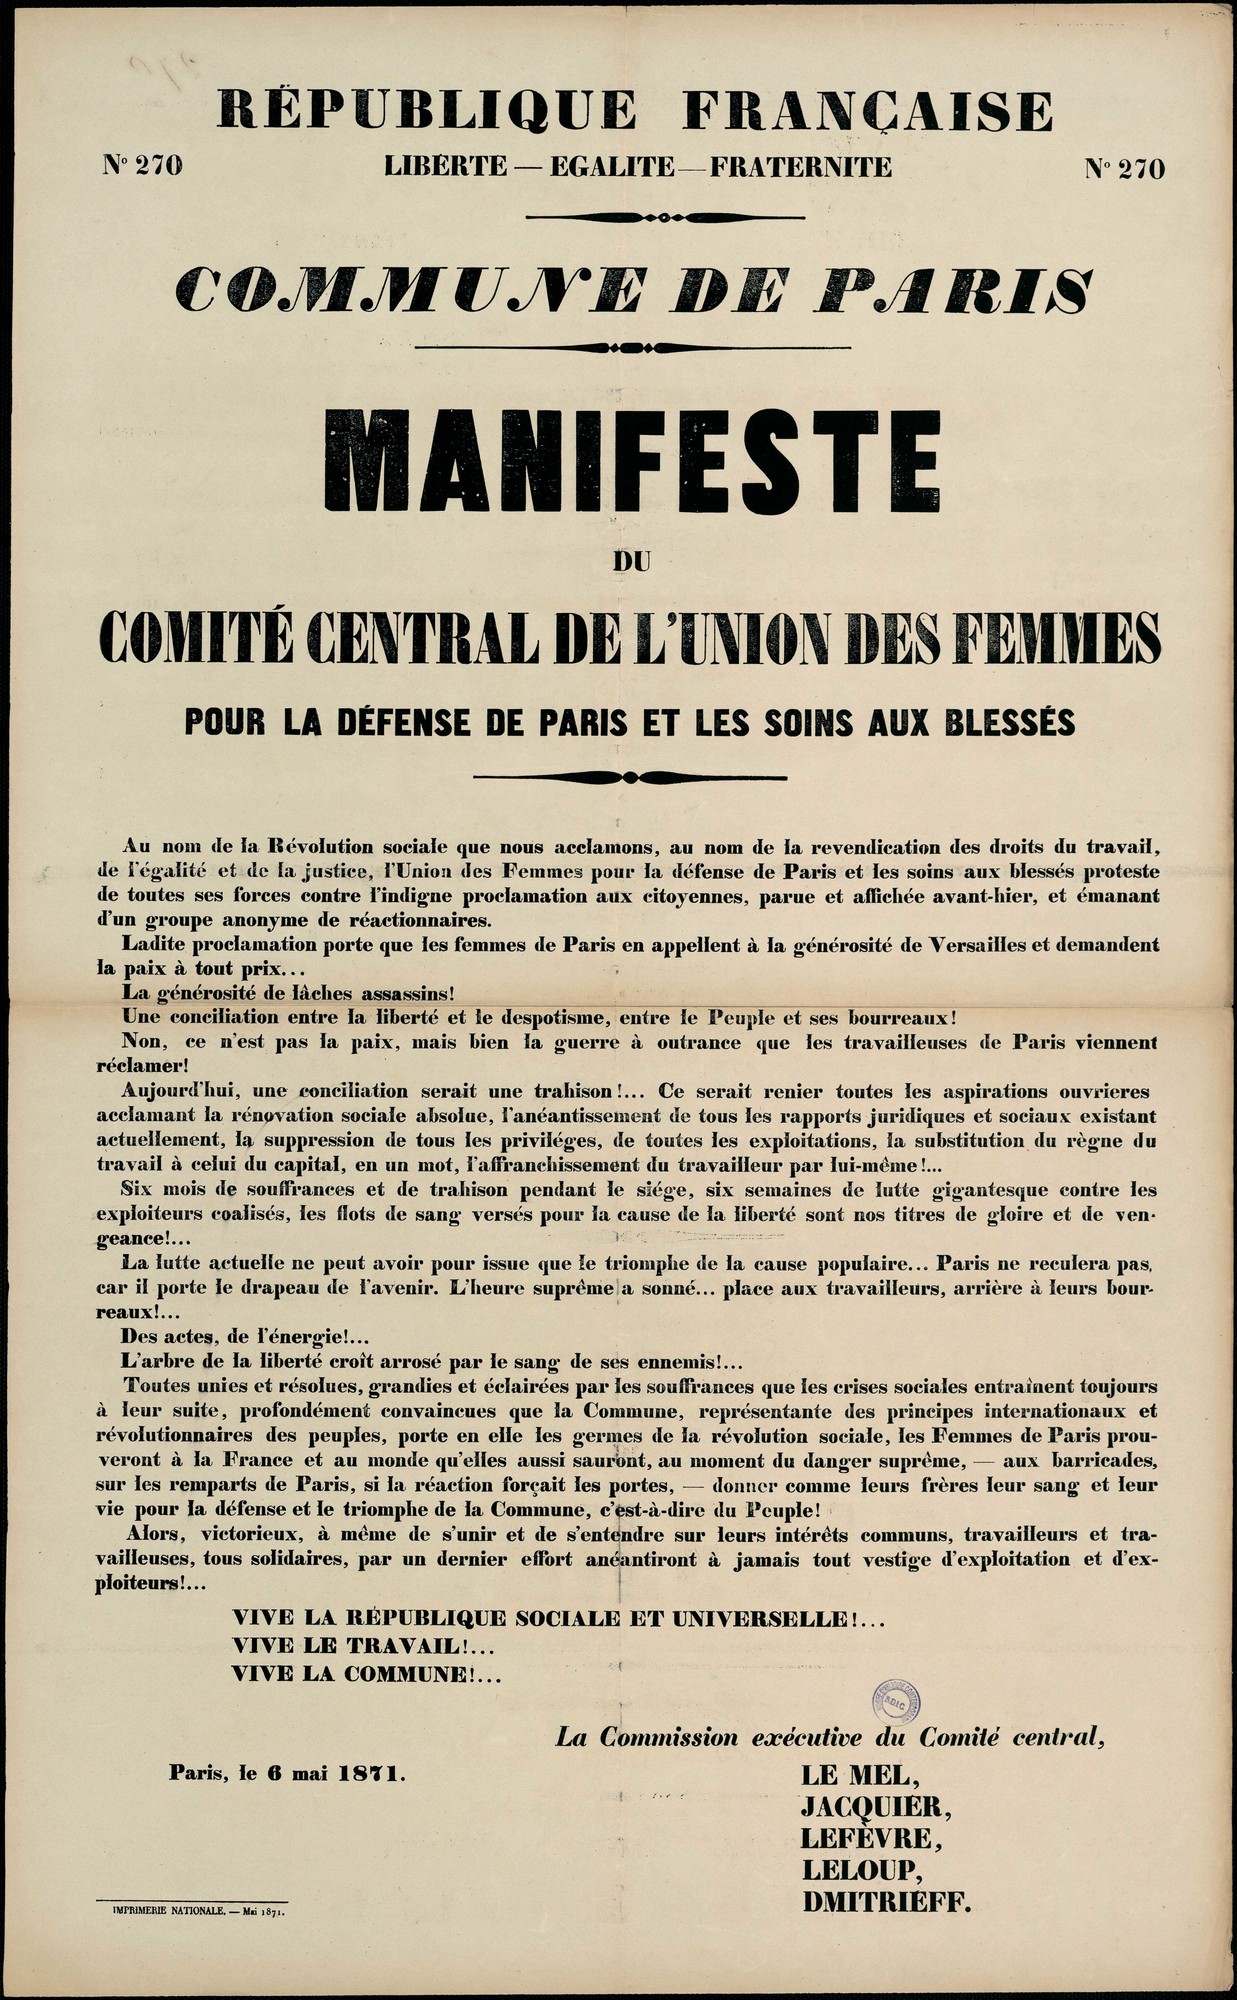 Affiche de la Commune N° 270 du 6 mai 1871 - Manifeste du Comité central de l'Union des femmes pour la défense de Paris et les soins aux blessés  (source La contemporaine à Nanterre - argonnaute.parisnanterre.fr)